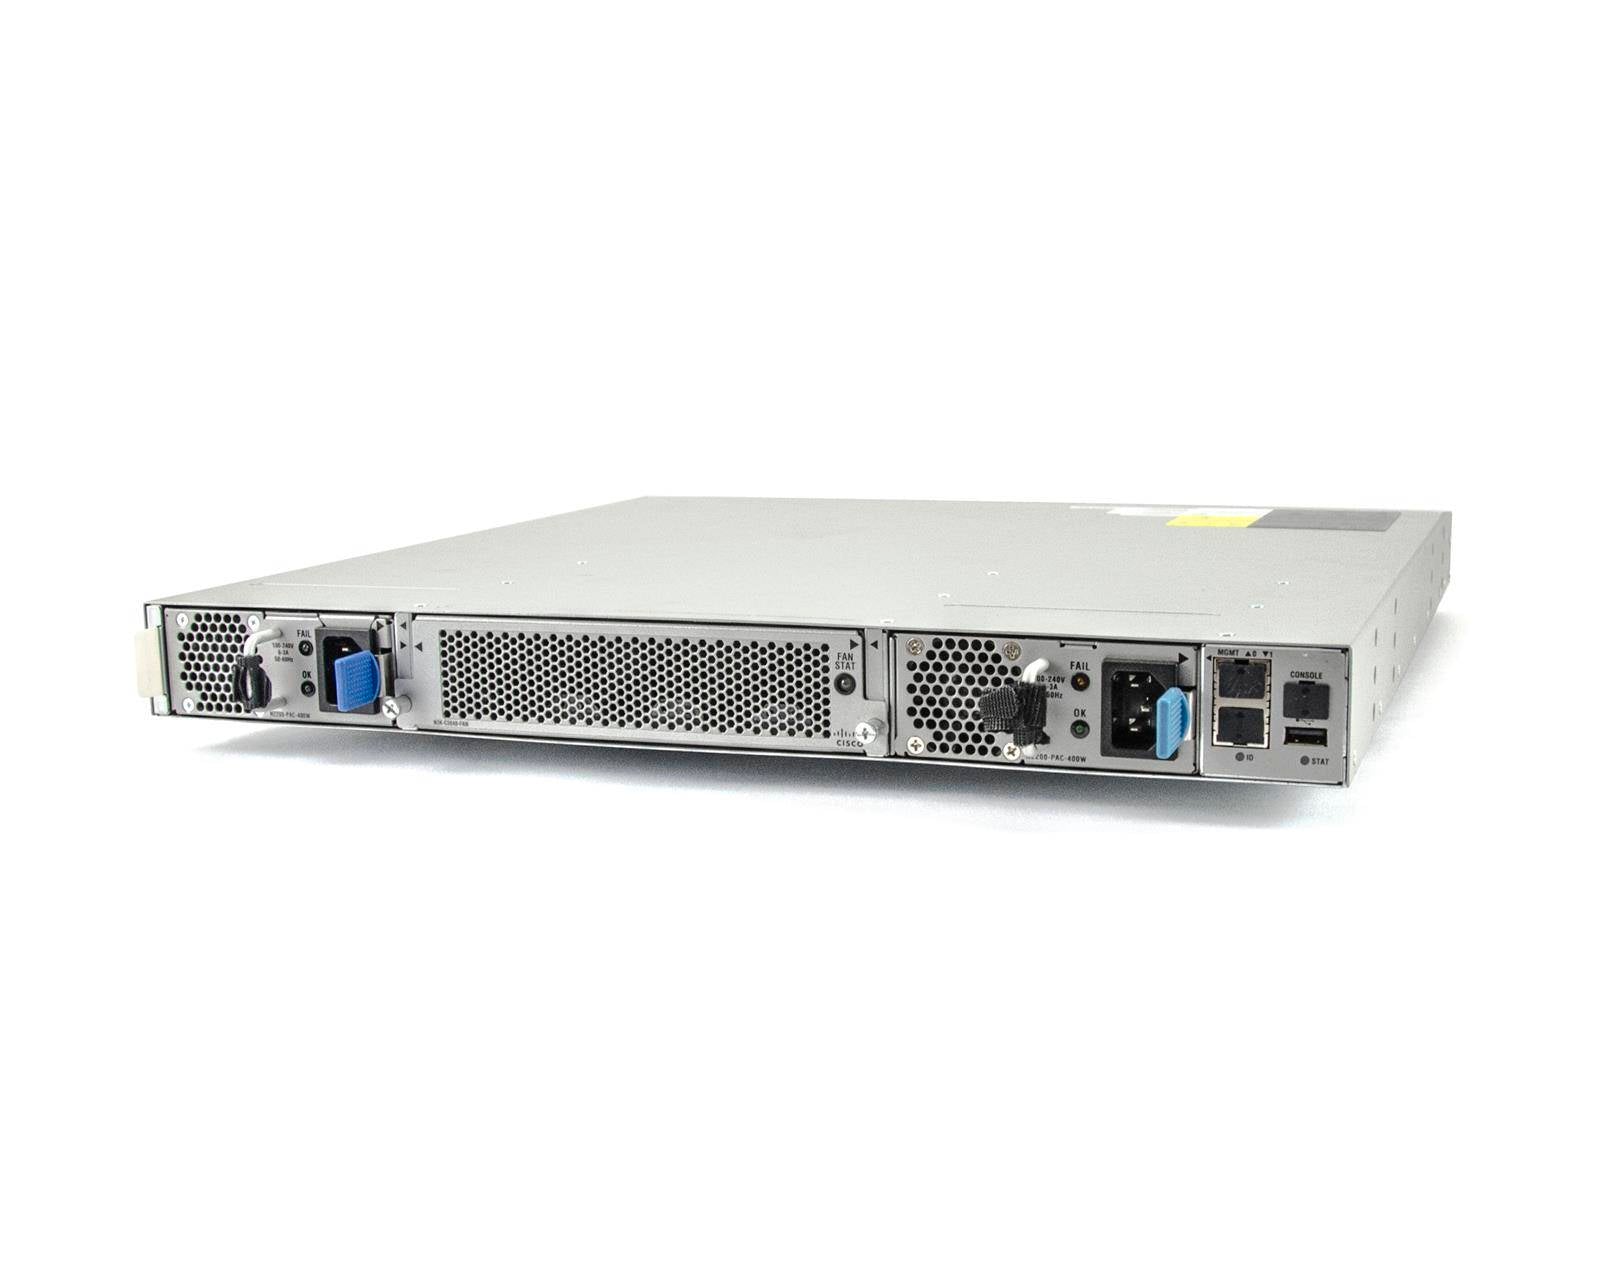 Cisco Nexus- N3K-C3048TP-1GE